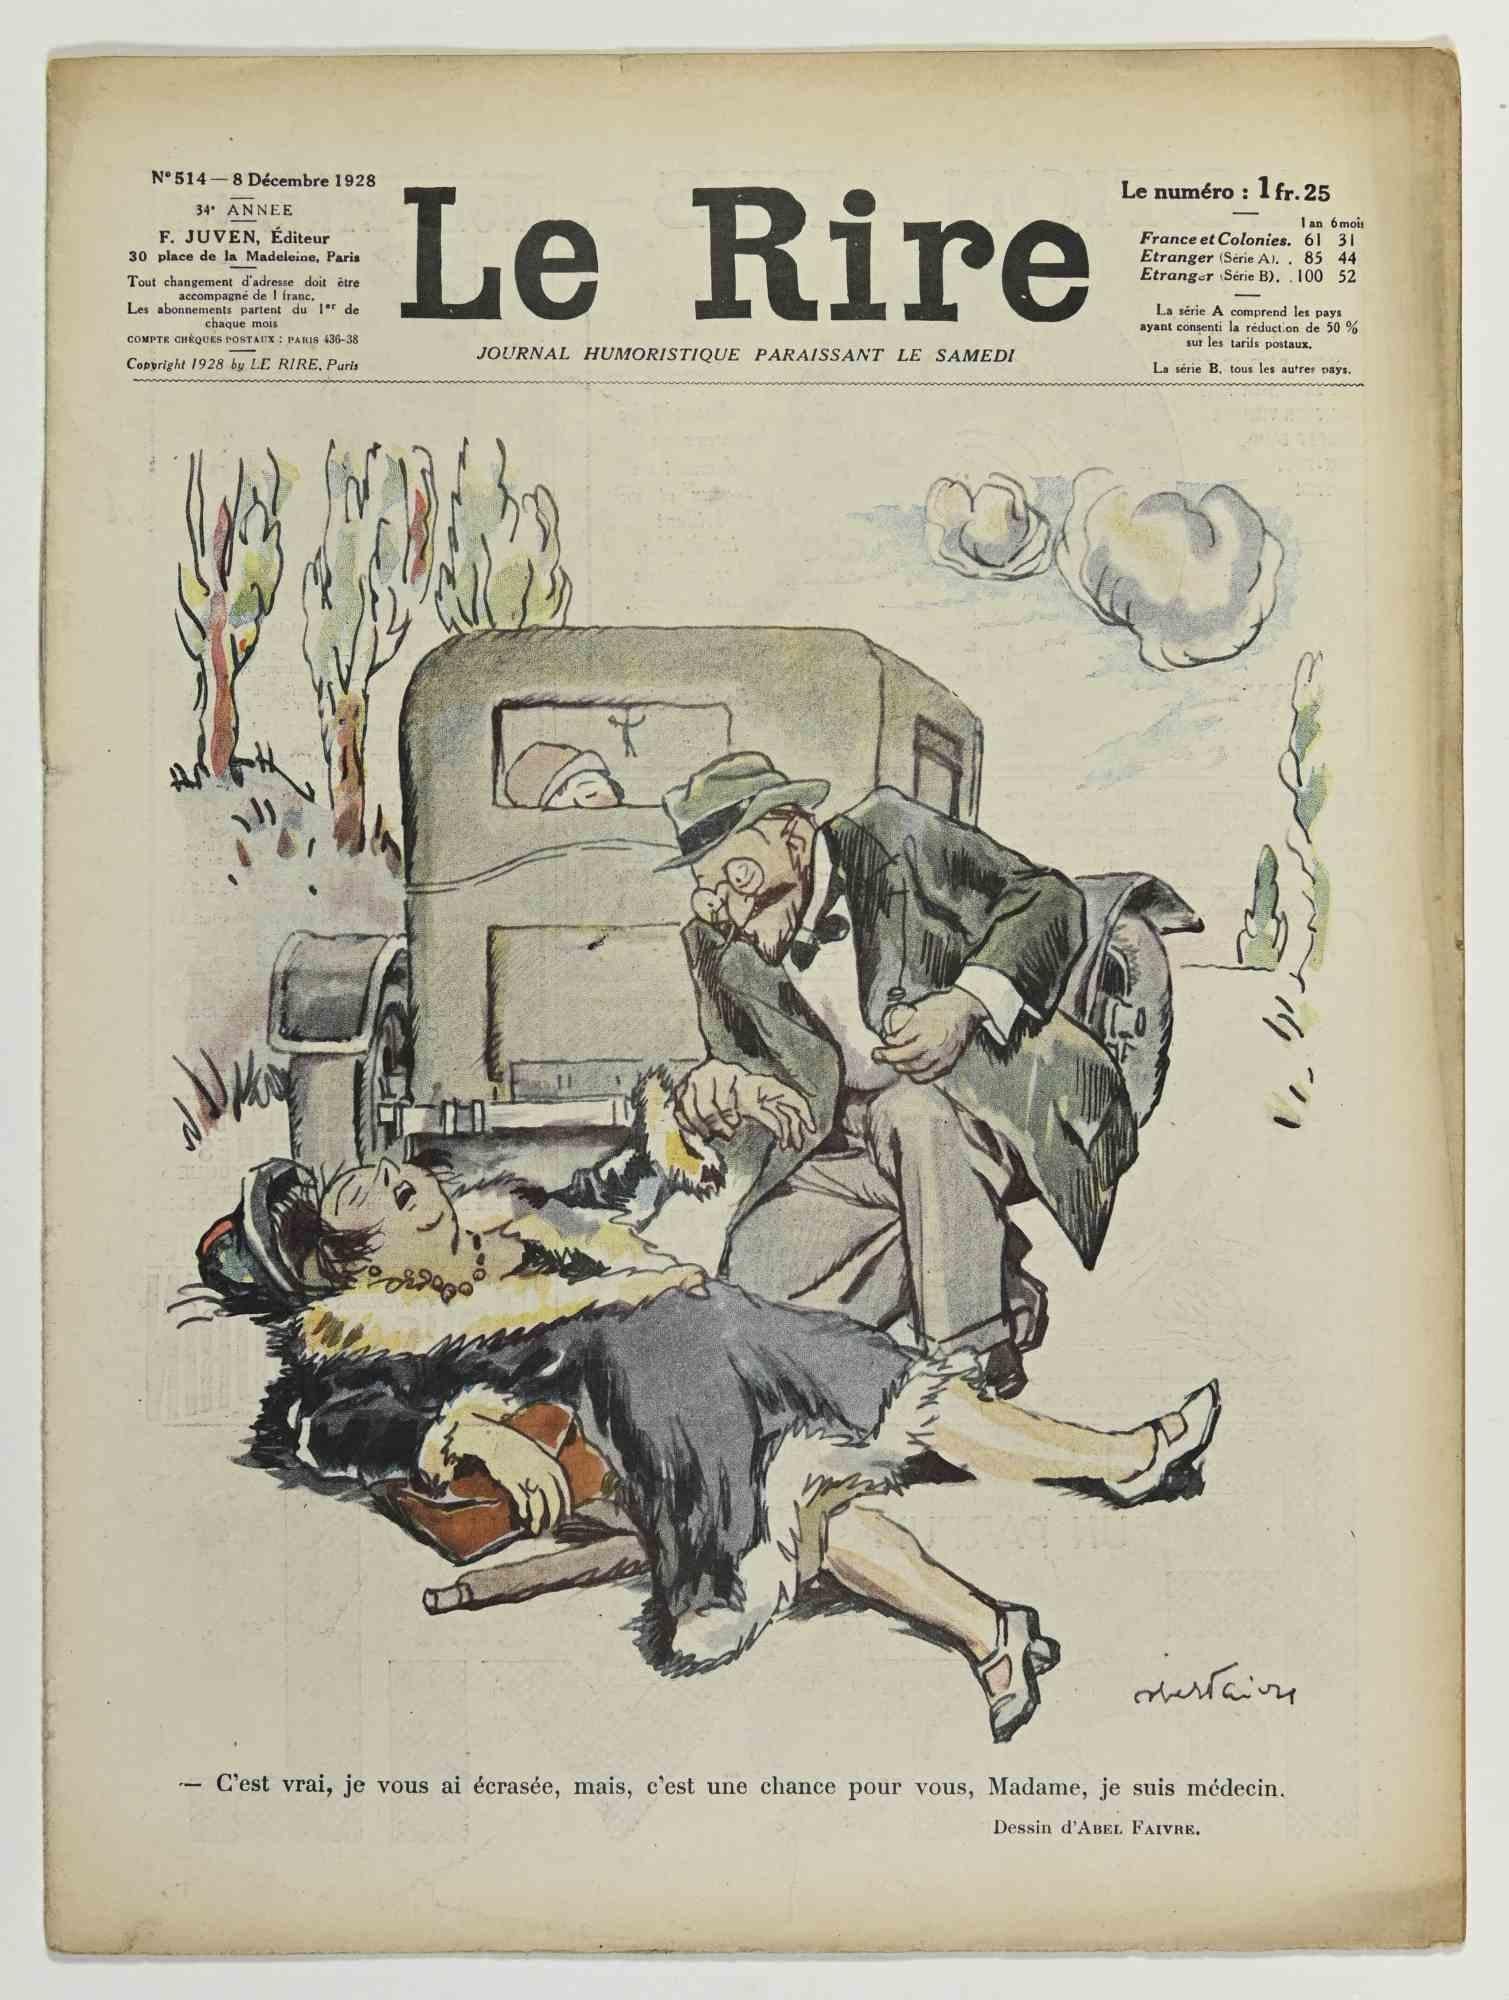 Le Rire - Illustrierte Zeitschrift von Abel Faivre - 1928 (Moderne), Art, von Jules-Abel Faivre